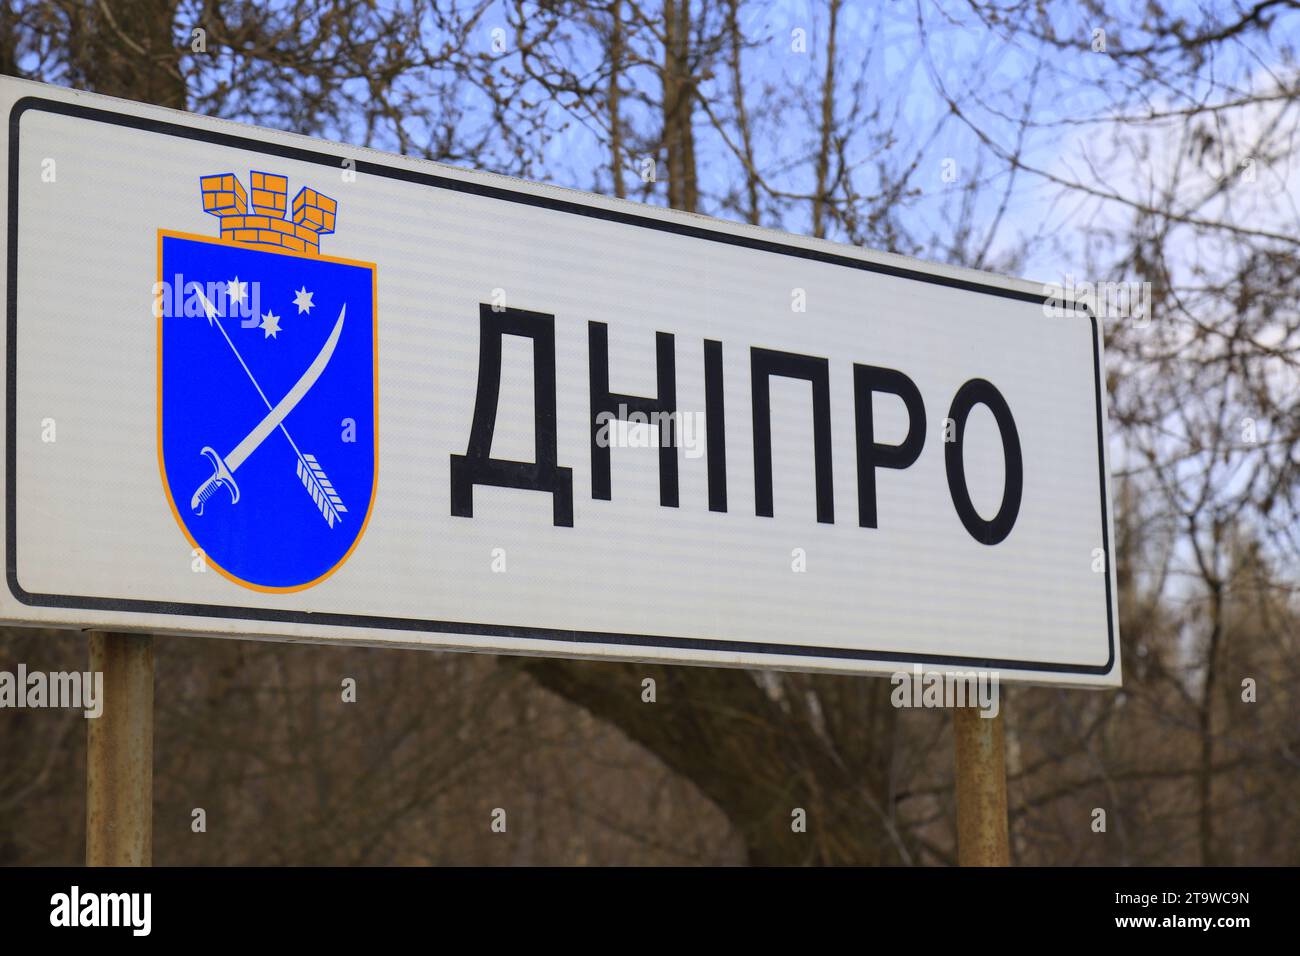 Panneau routier à l'entrée de la ville Dnipro avec mot en ukrainien - Dnipro. Panneau d'information du début de la ville de Dnepr avec armoiries. Ukraine Banque D'Images